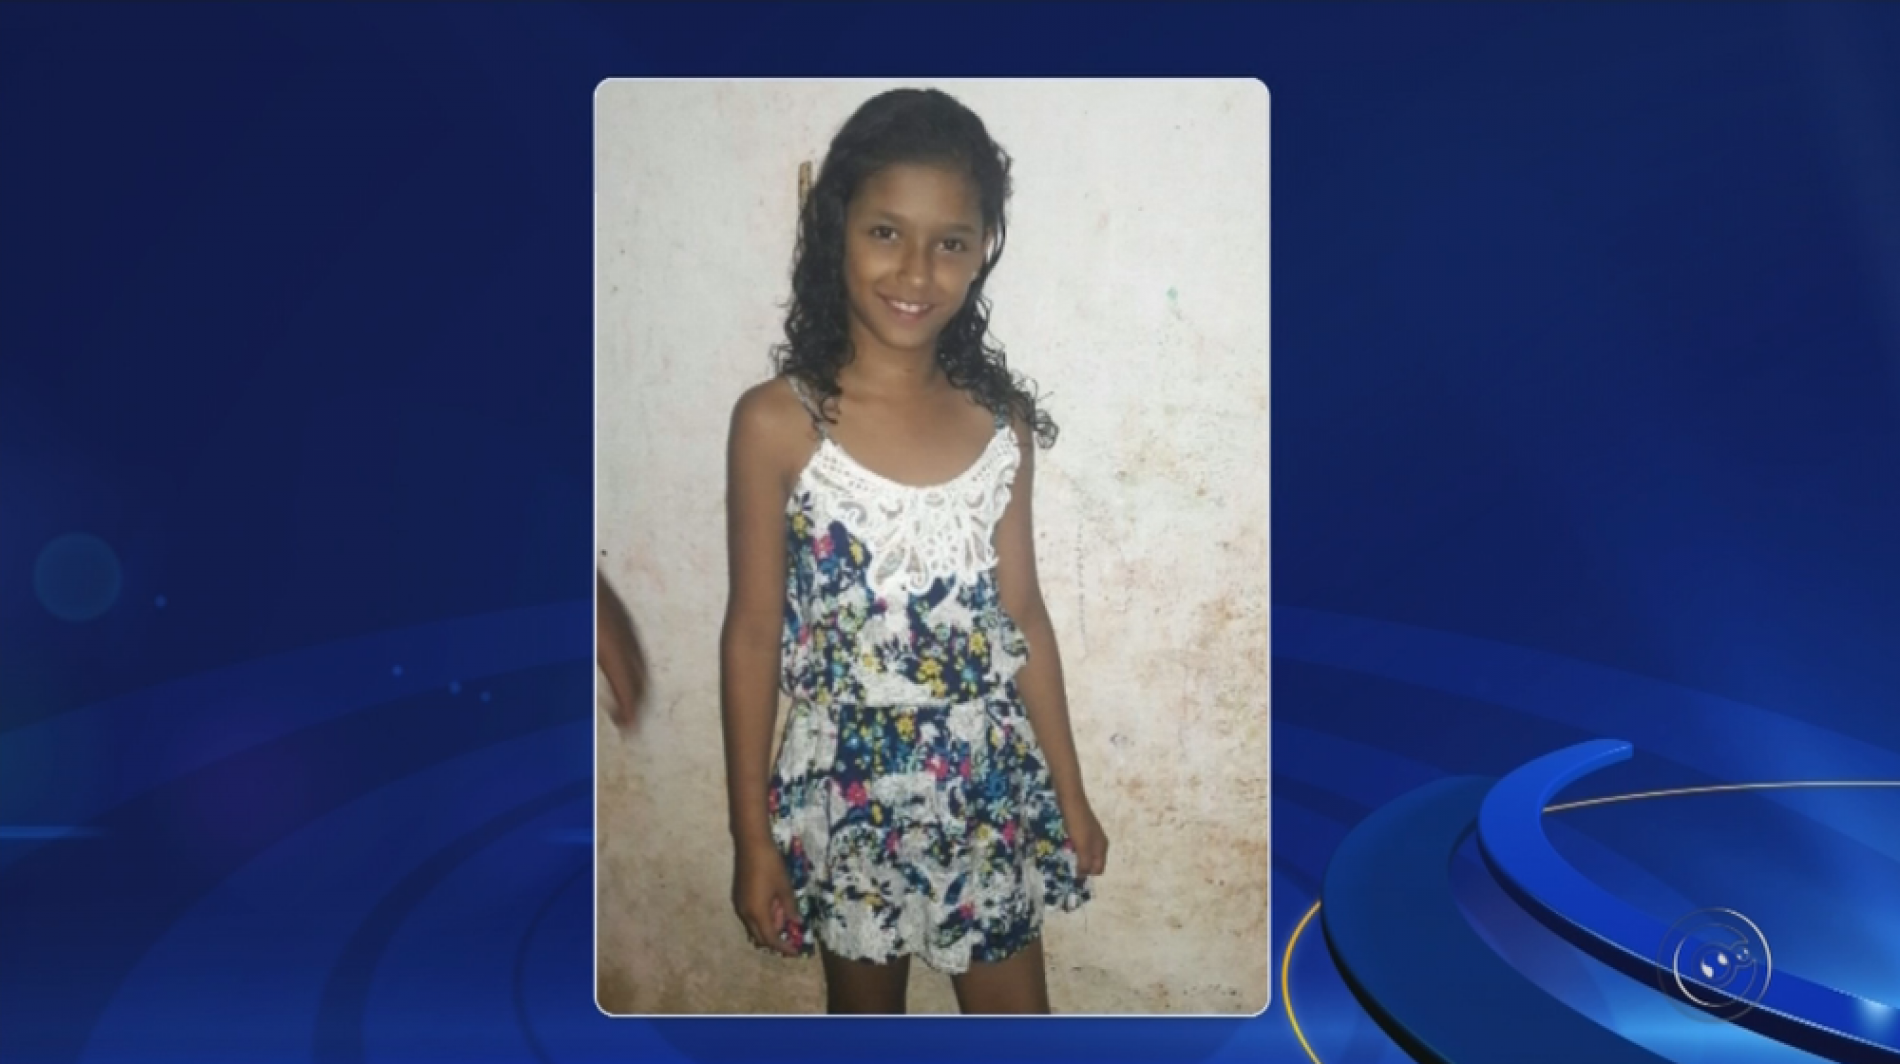 REGIÃO: Polícia procura menina de 10 anos que desapareceu em Araçatuba